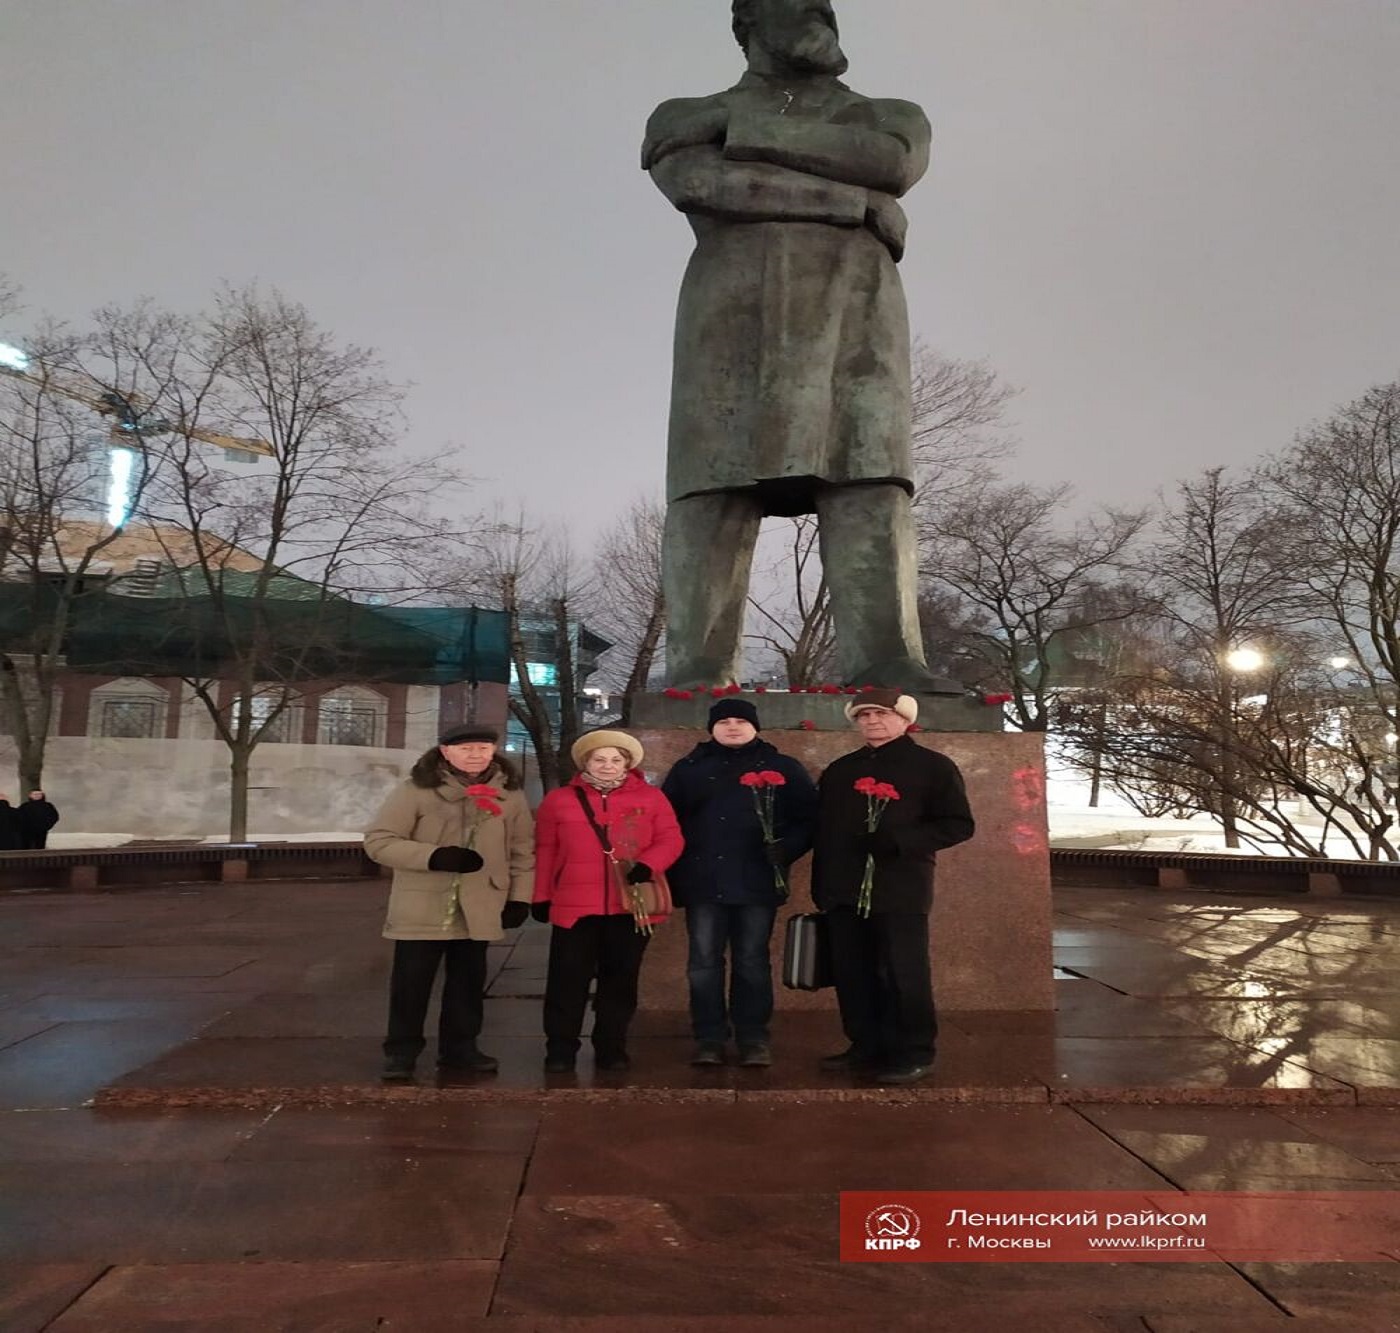 Активисты МПО КПРФ «Ленинское» отметили День рождения Фридриха Энгельса